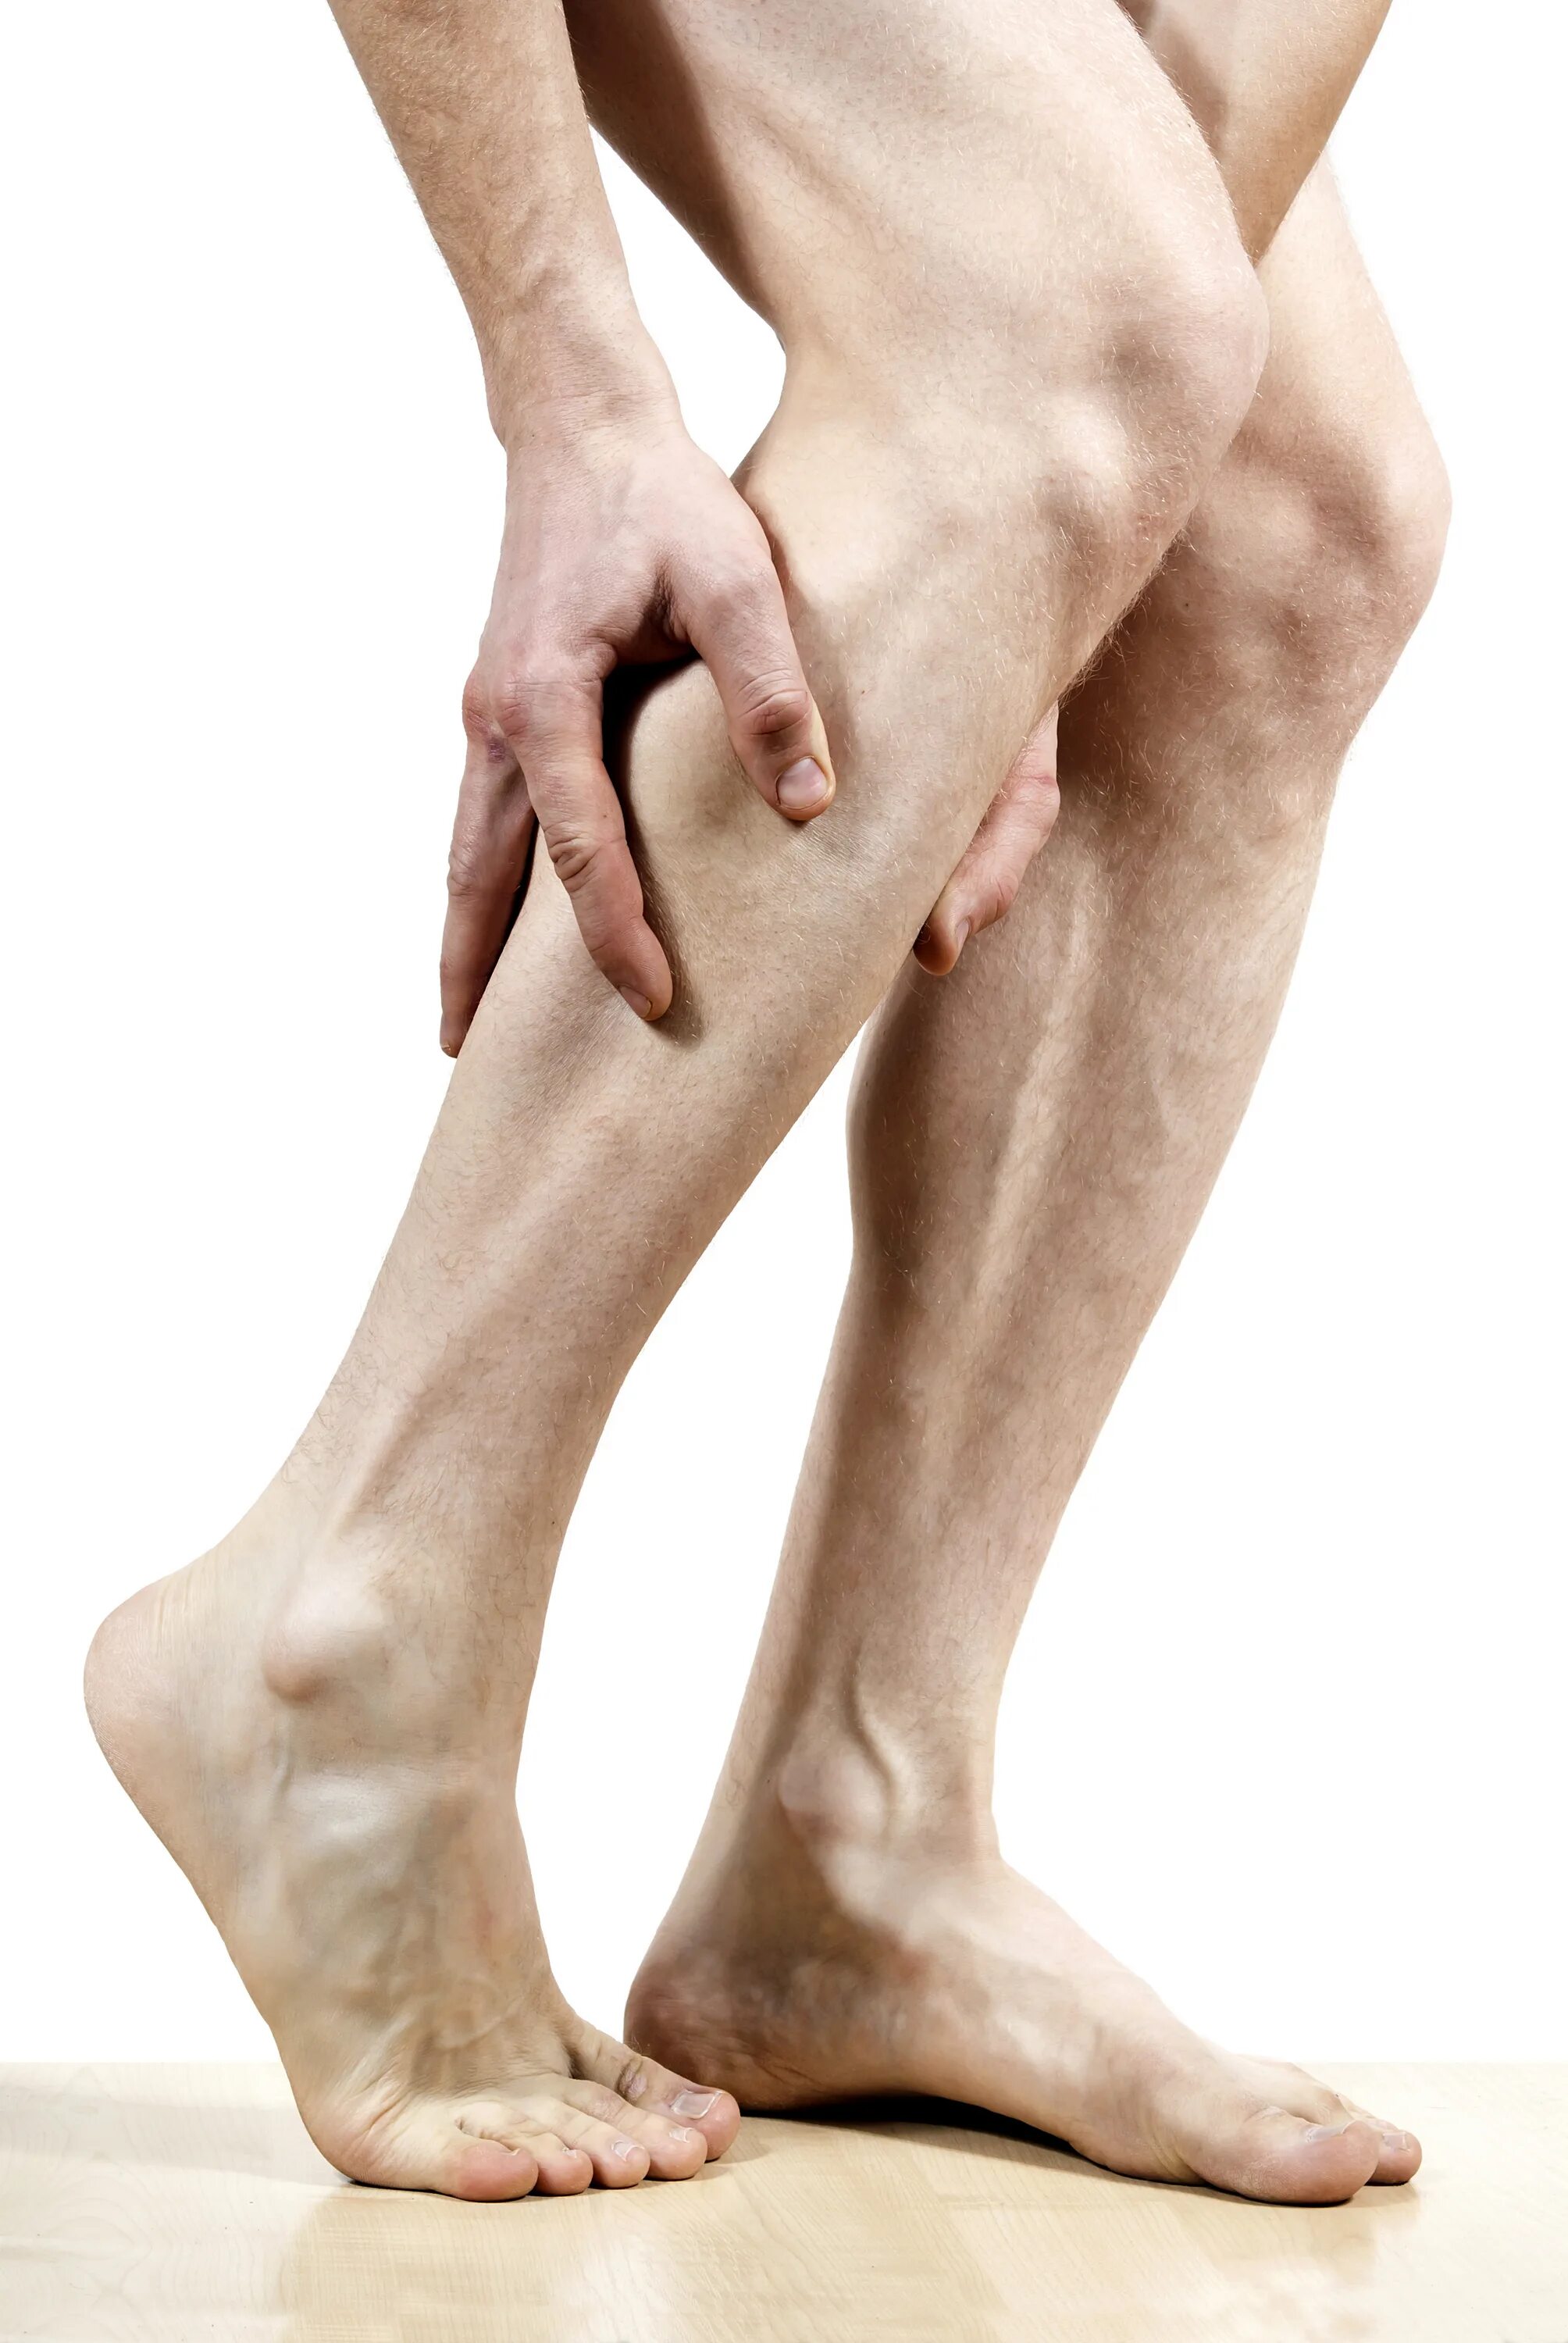 Сильные судороги в ногах причины. Облитерирующий атеросклероз гангрена. Рожистое воспаление голени. Атеросклероз сосудов нижних конечностей симптомы. Стадии атеросклероза нижних конечностей.